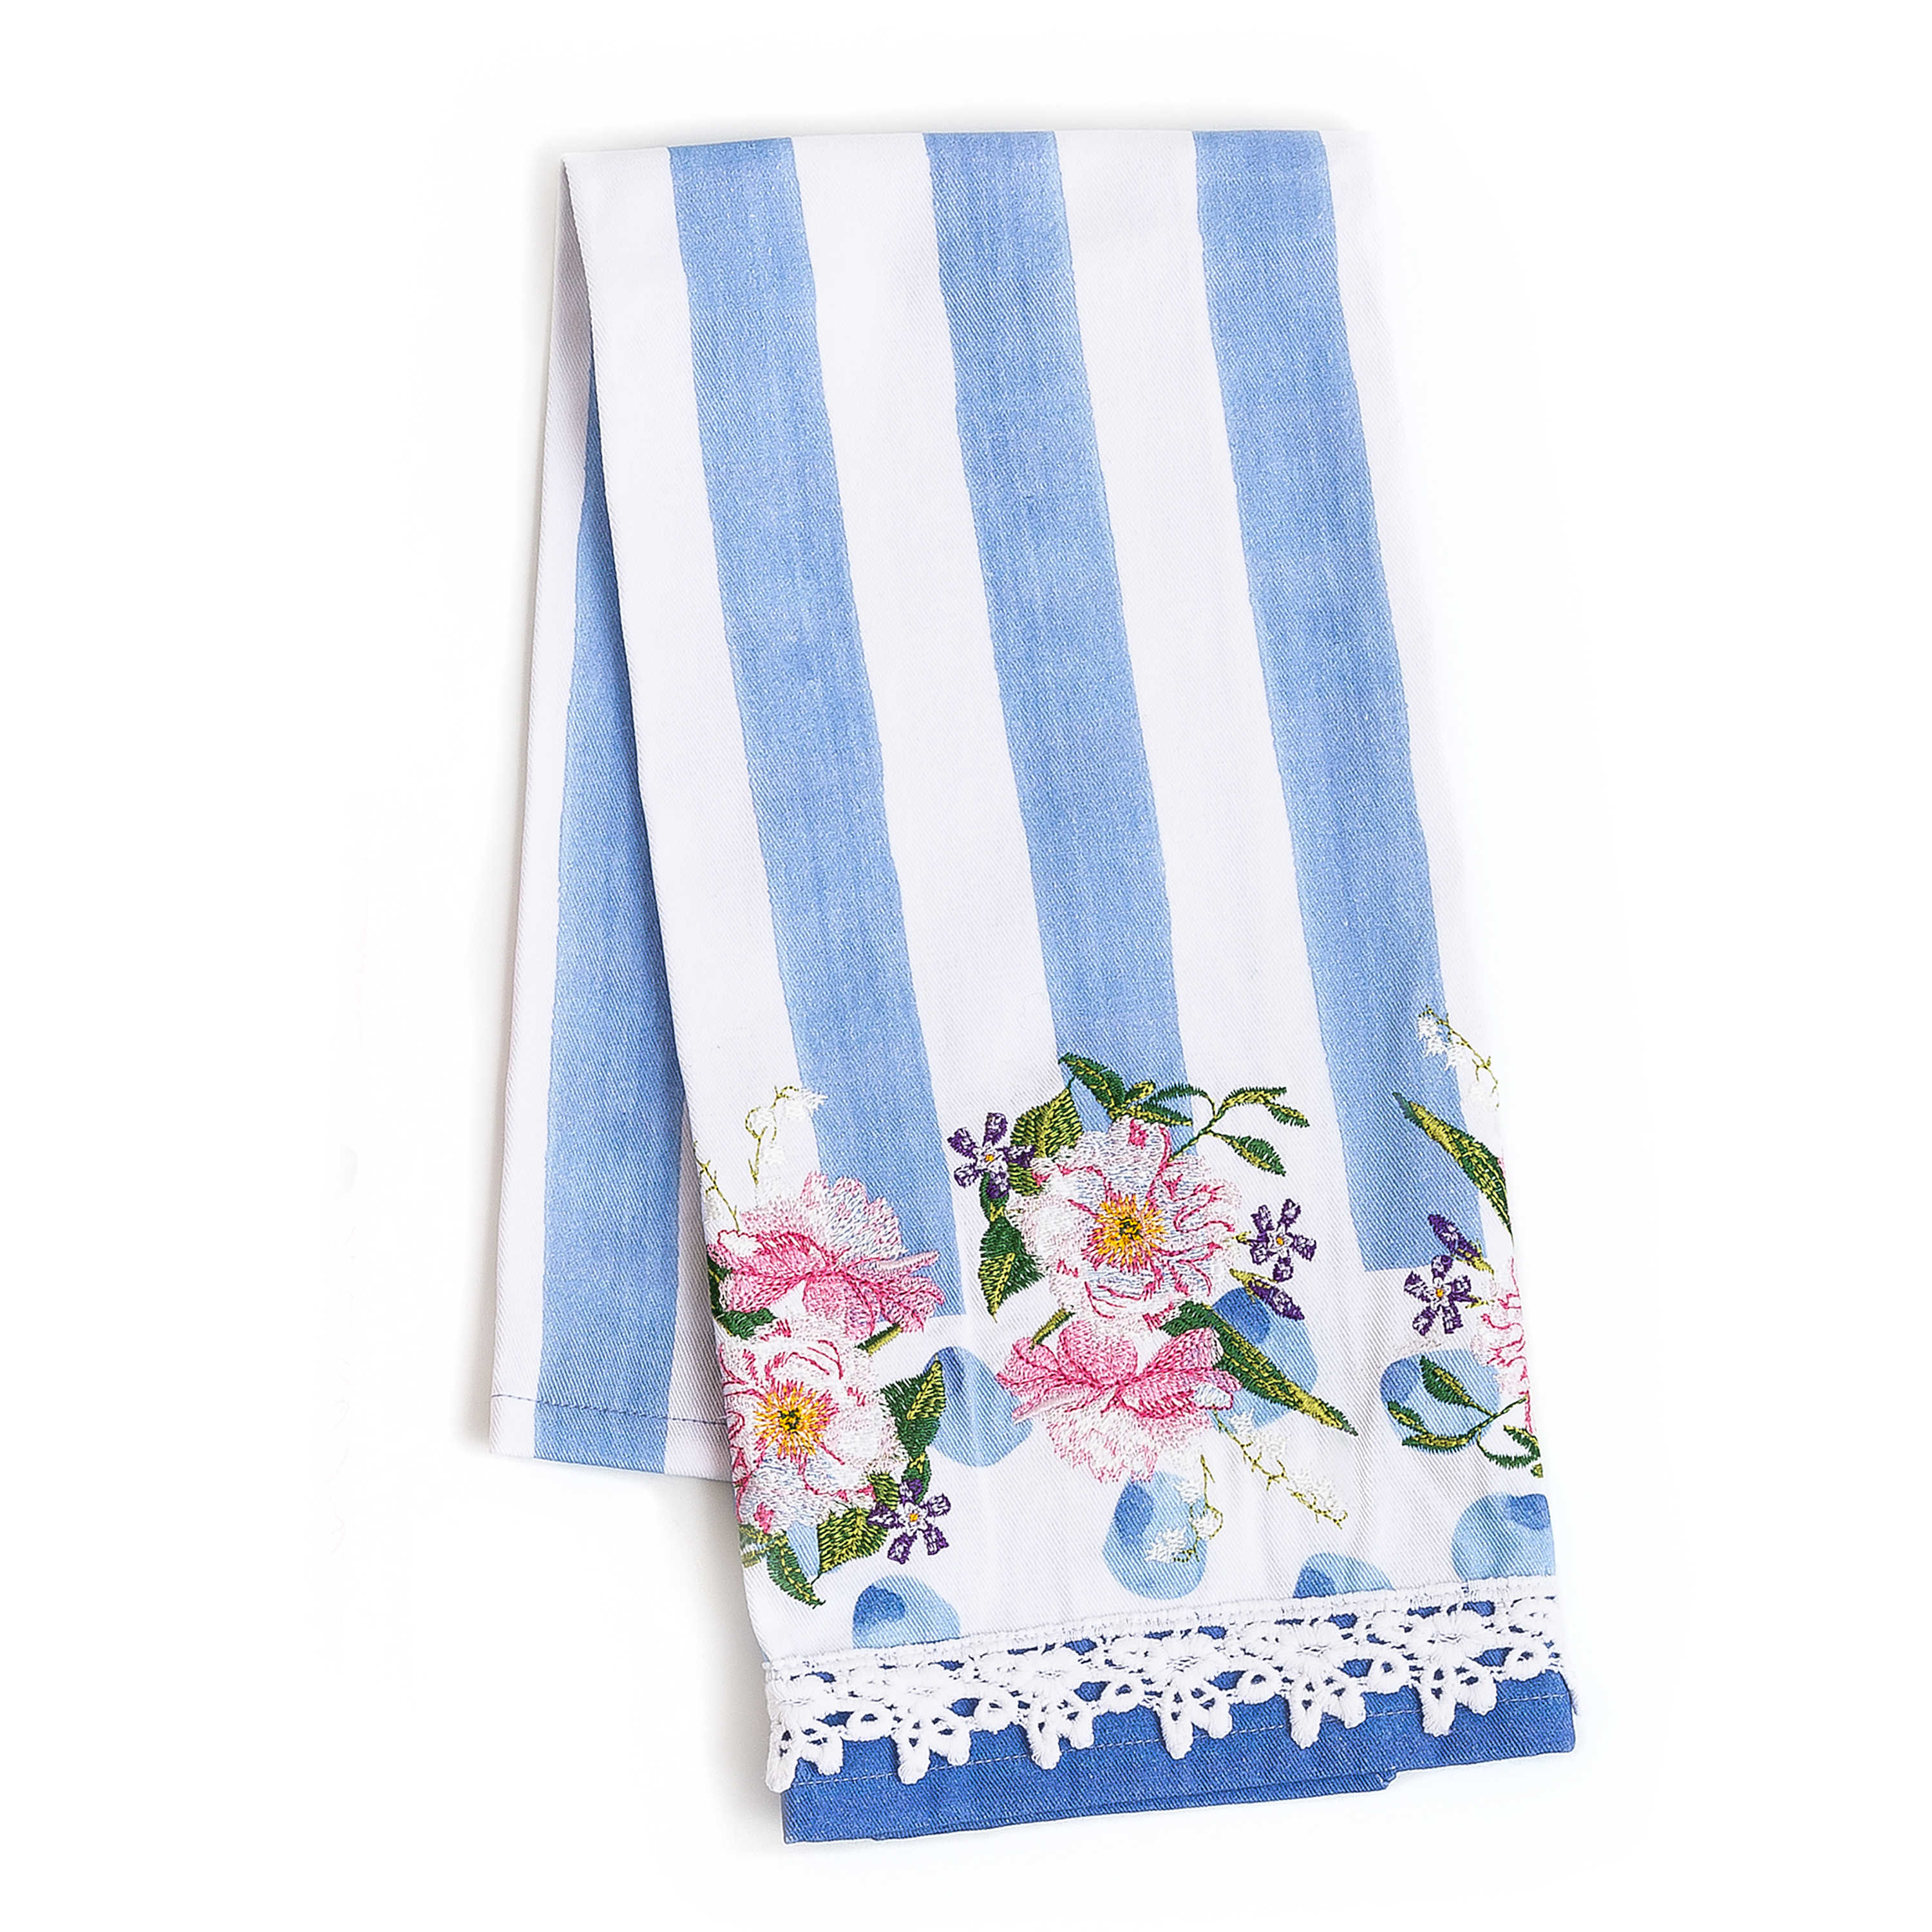 Wildflowers Dish Towel - Blue mackenzie-childs Panama 0